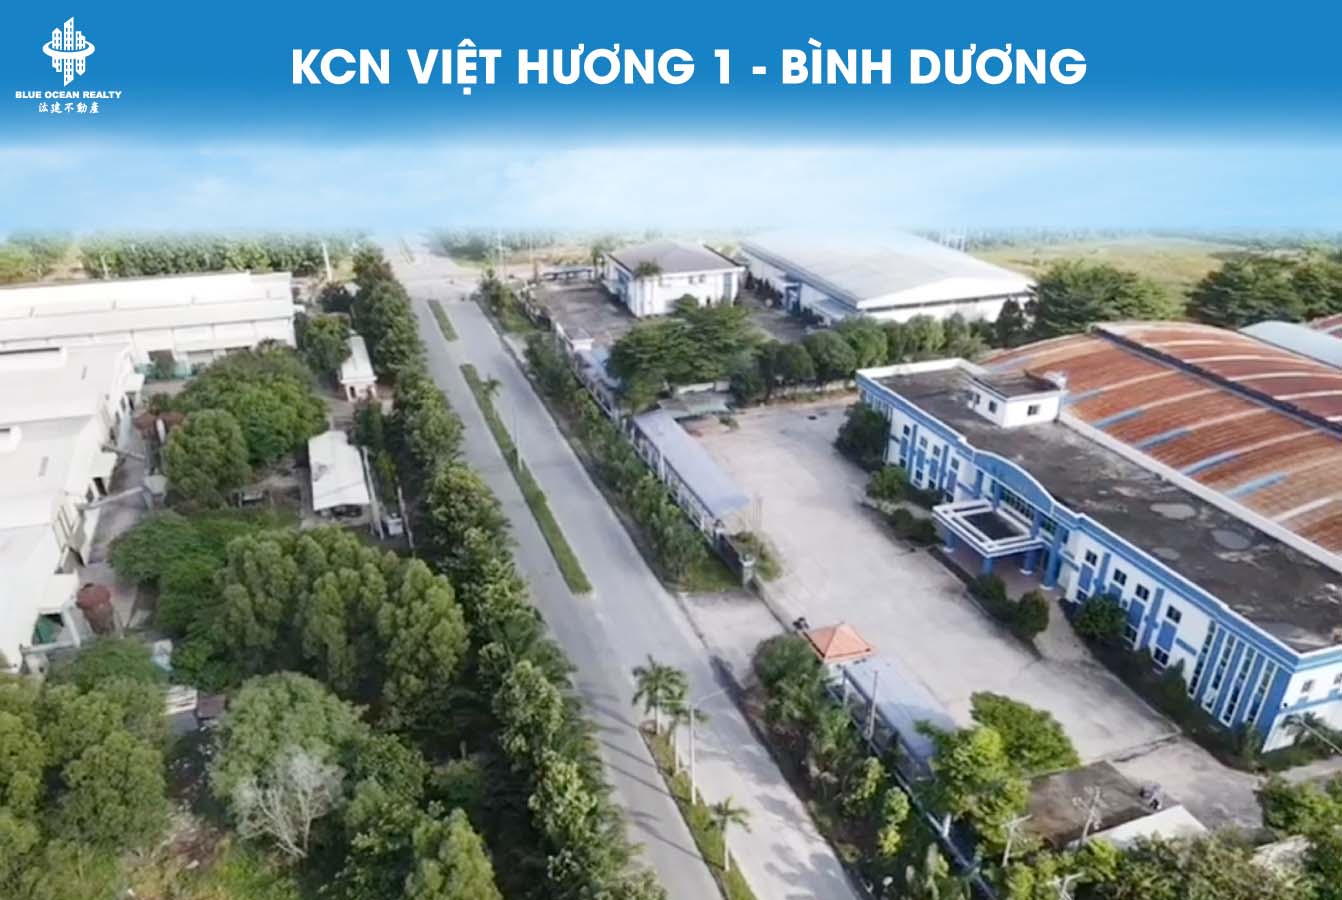 Khu công nghiệp Việt Hương 1 - Bình Dương